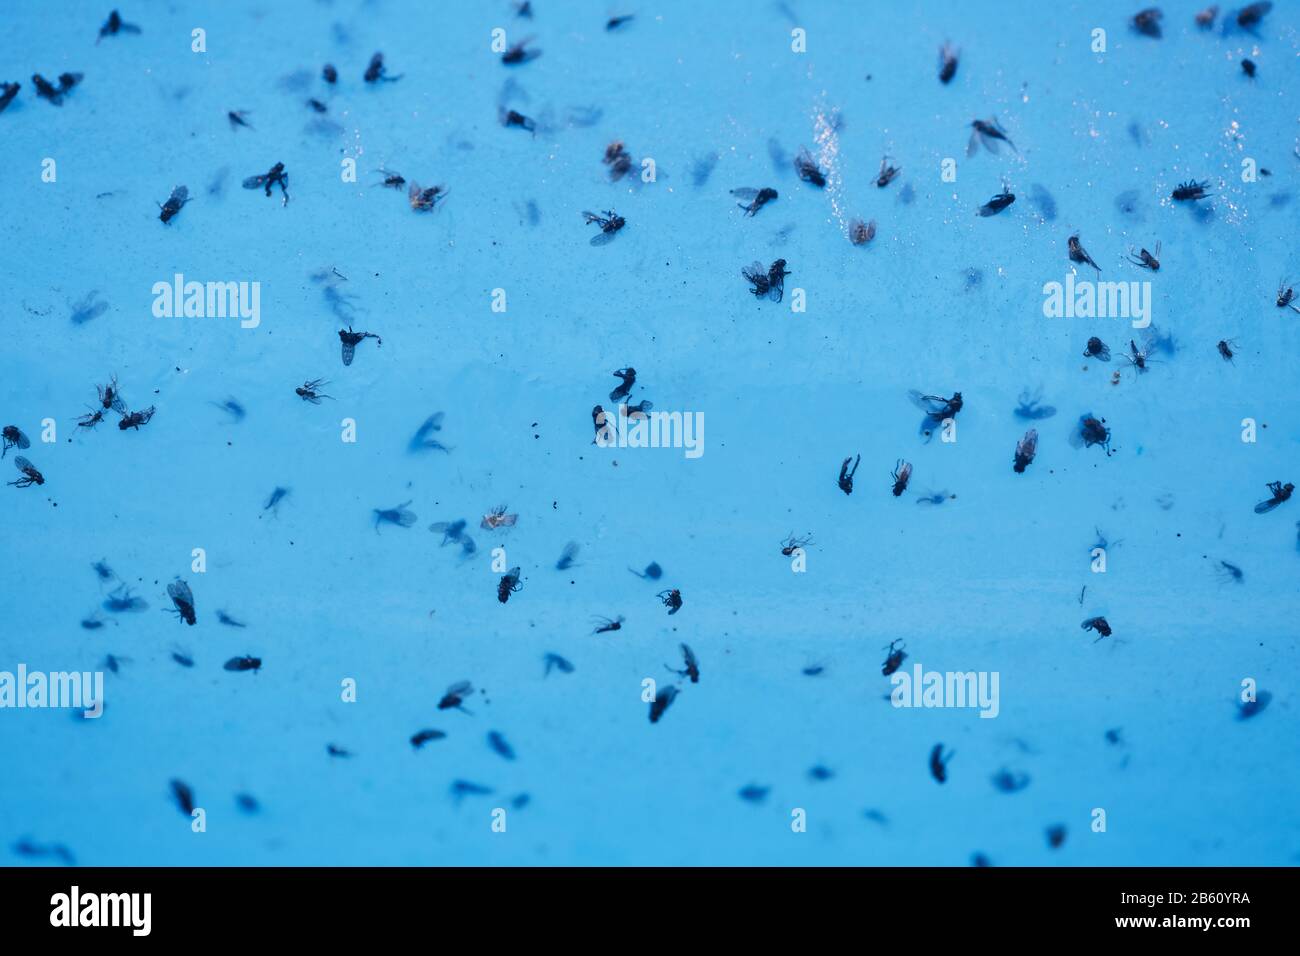 Hintergrundbild von toten Fliegen in Wasserfalle, Gartenarbeit, Pestizid, Insektenkonzept Stockfoto